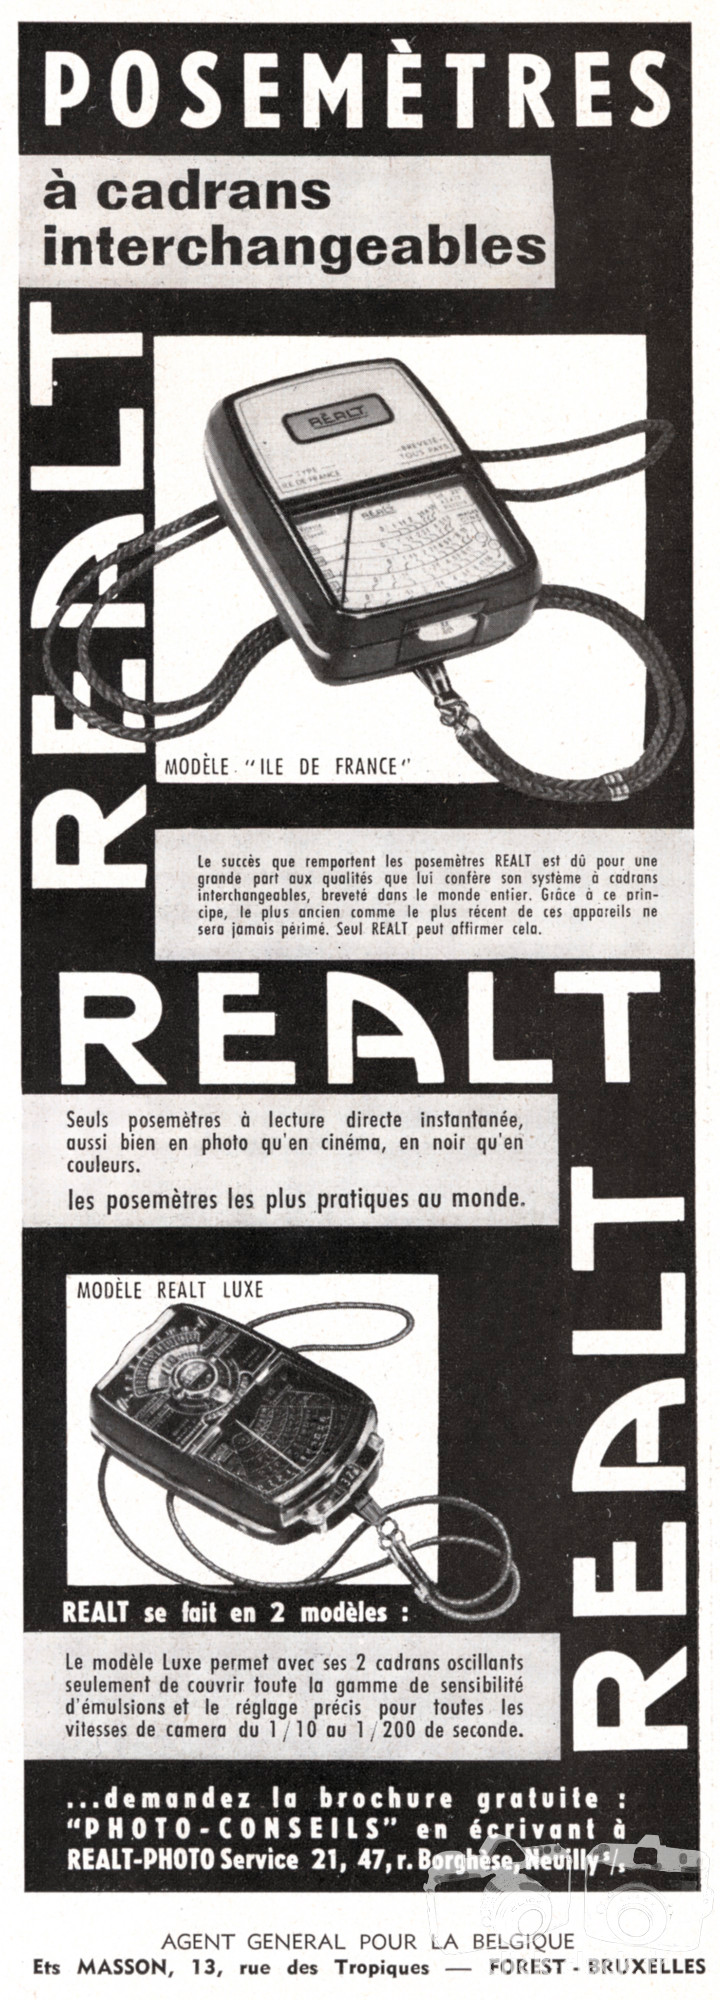 Réalt - Cellule Réalt Ils de France, Réalt Luxe - mai 1957 - Photo-Cinéma